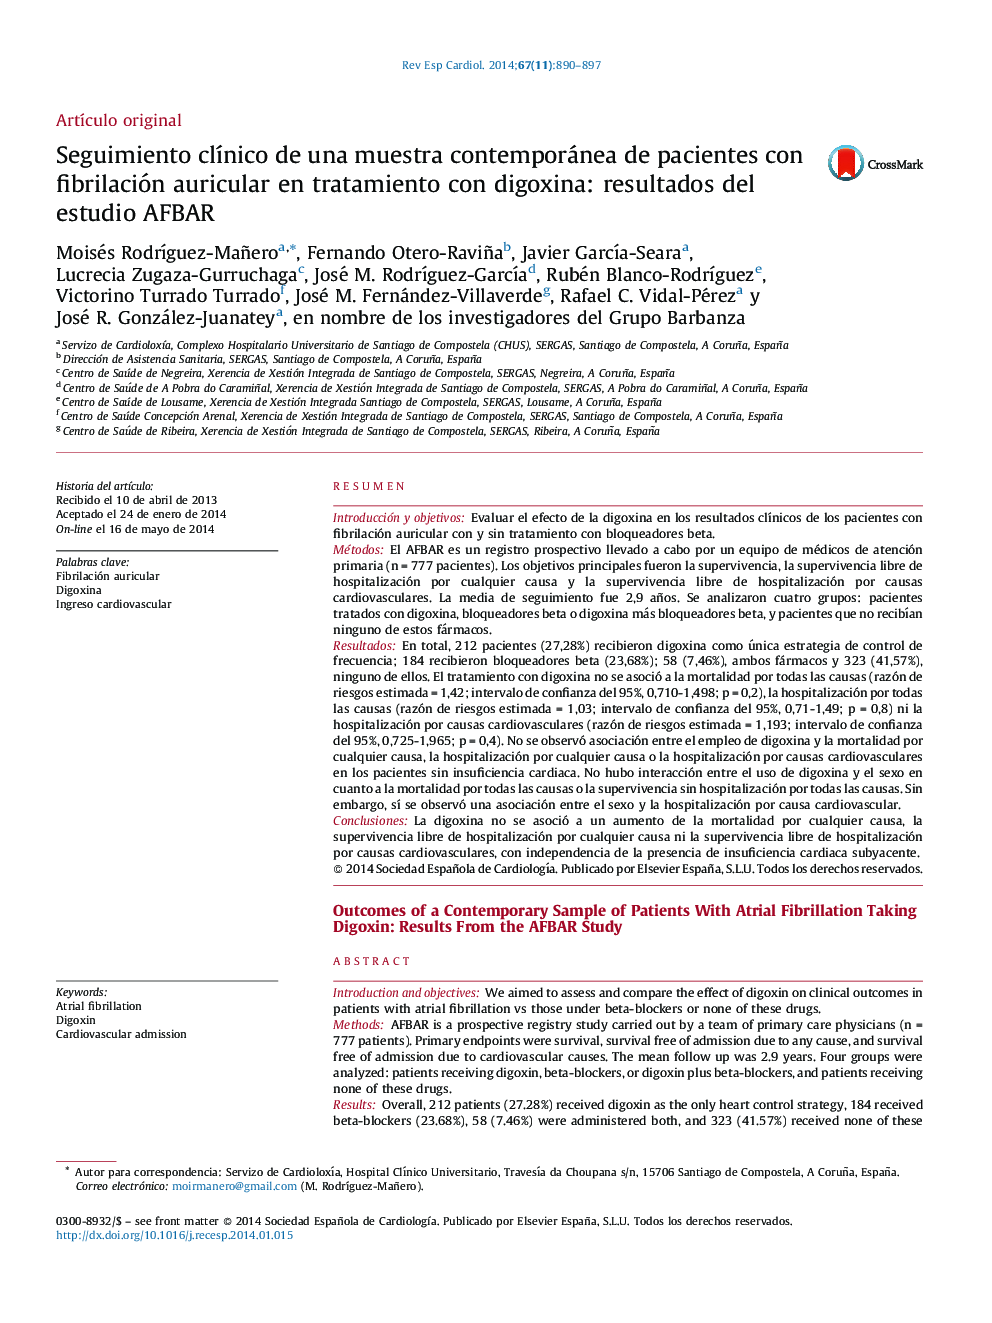 Seguimiento clínico de una muestra contemporánea de pacientes con fibrilación auricular en tratamiento con digoxina: resultados del estudio AFBAR